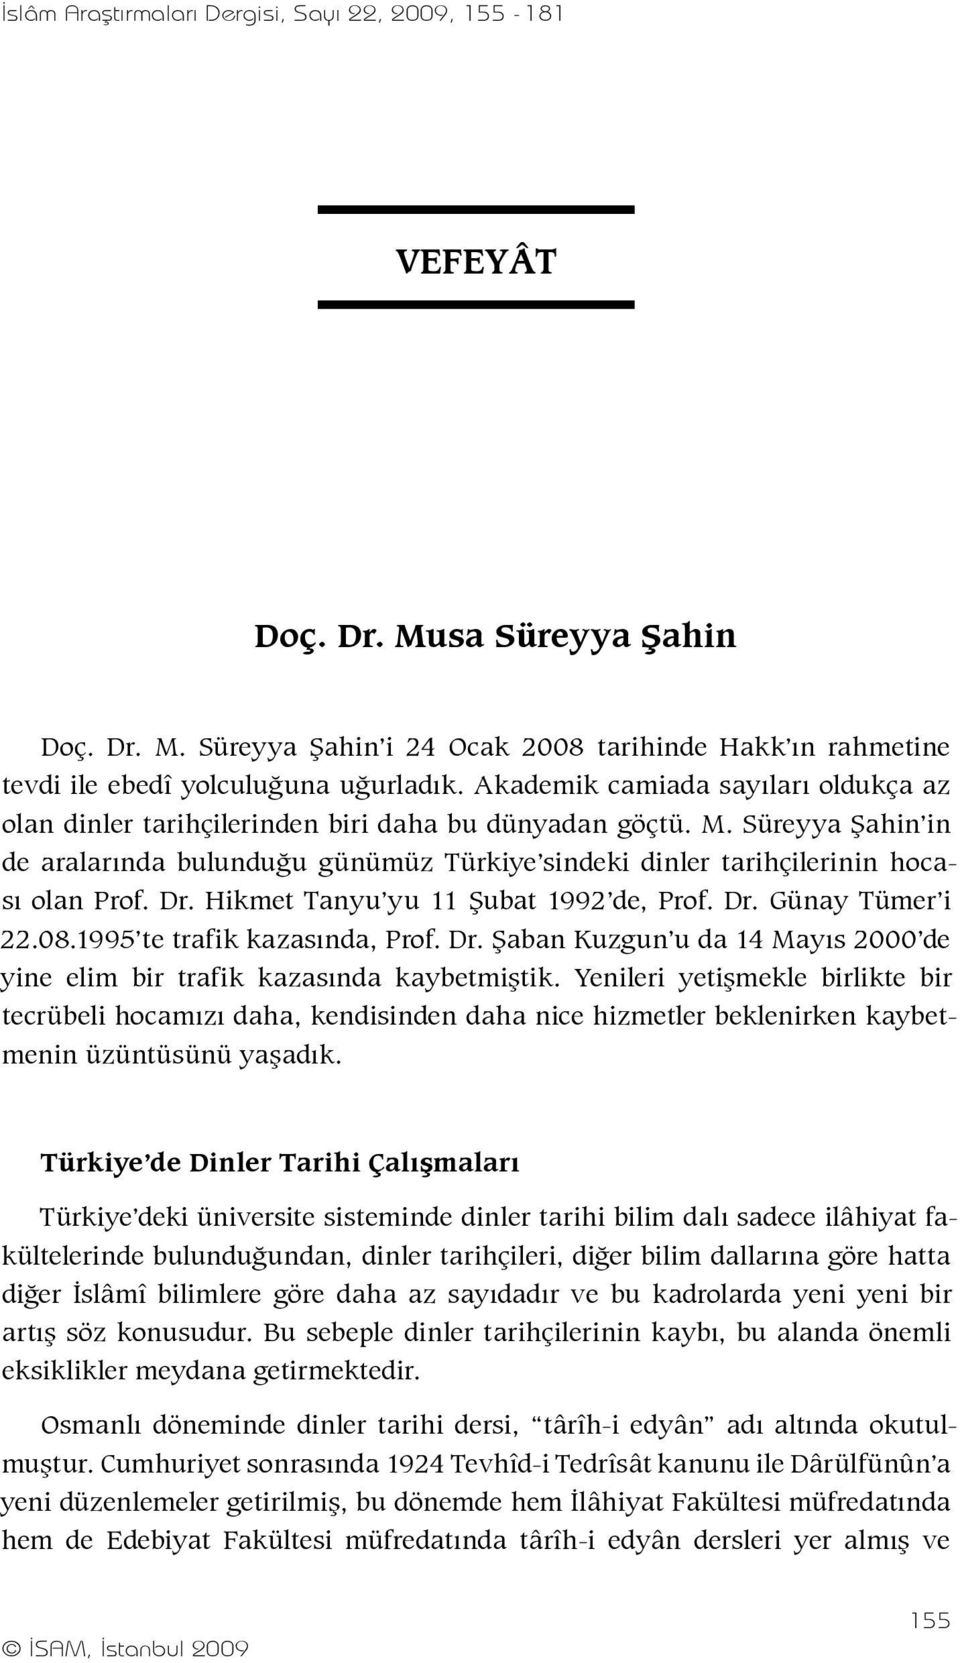 Süreyya Şahin in de aralarında bulunduğu günümüz Türkiye sindeki dinler tarihçilerinin hocası olan Prof. Dr. Hikmet Tanyu yu 11 Şubat 1992 de, Prof. Dr. Günay Tümer i 22.08.